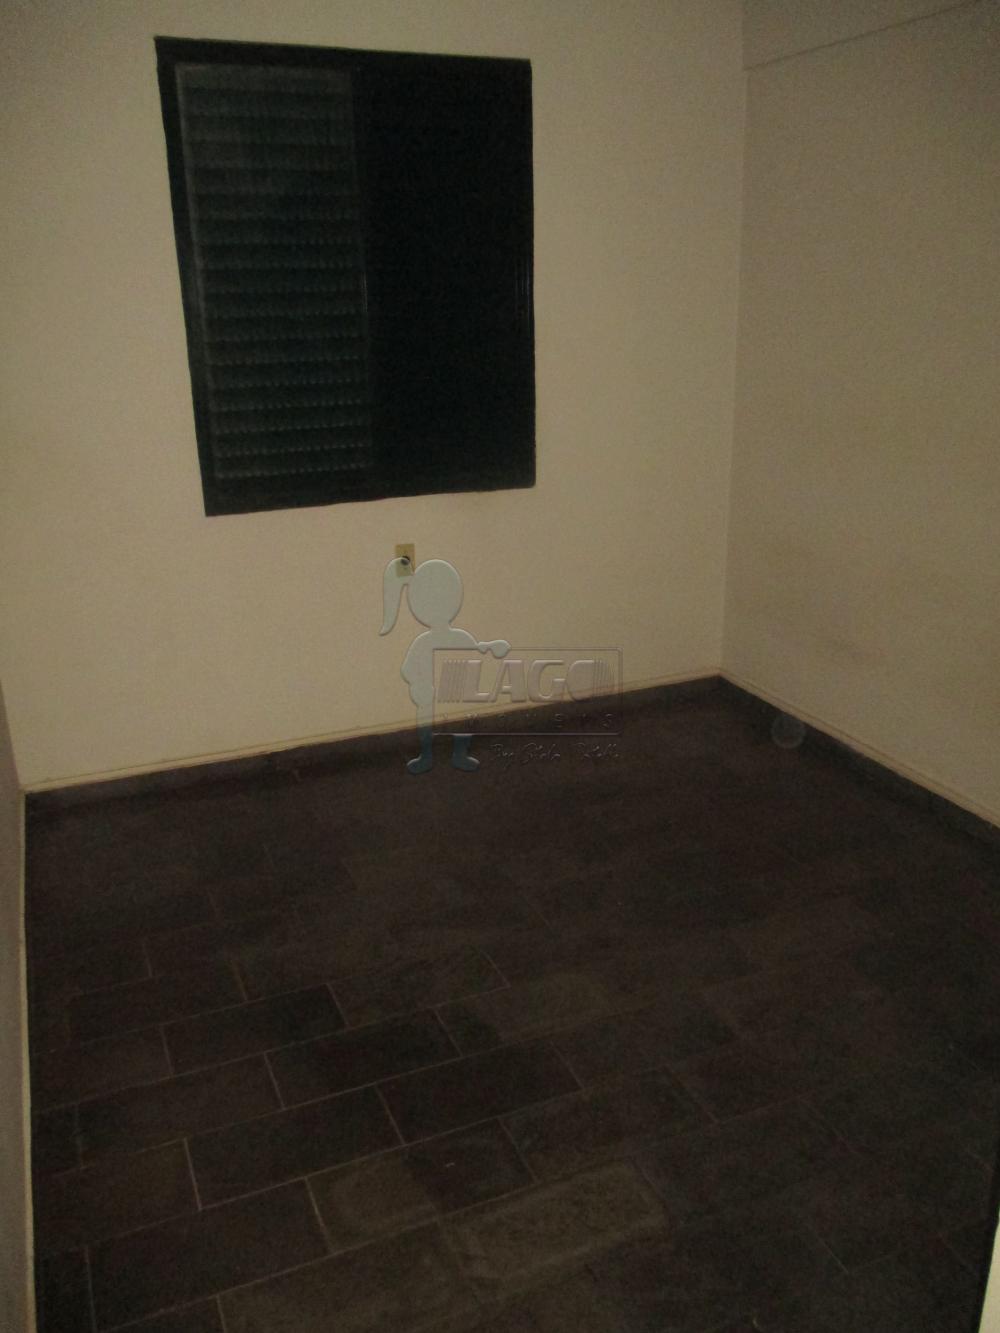 Alugar Apartamentos / Padrão em Ribeirão Preto R$ 500,00 - Foto 11